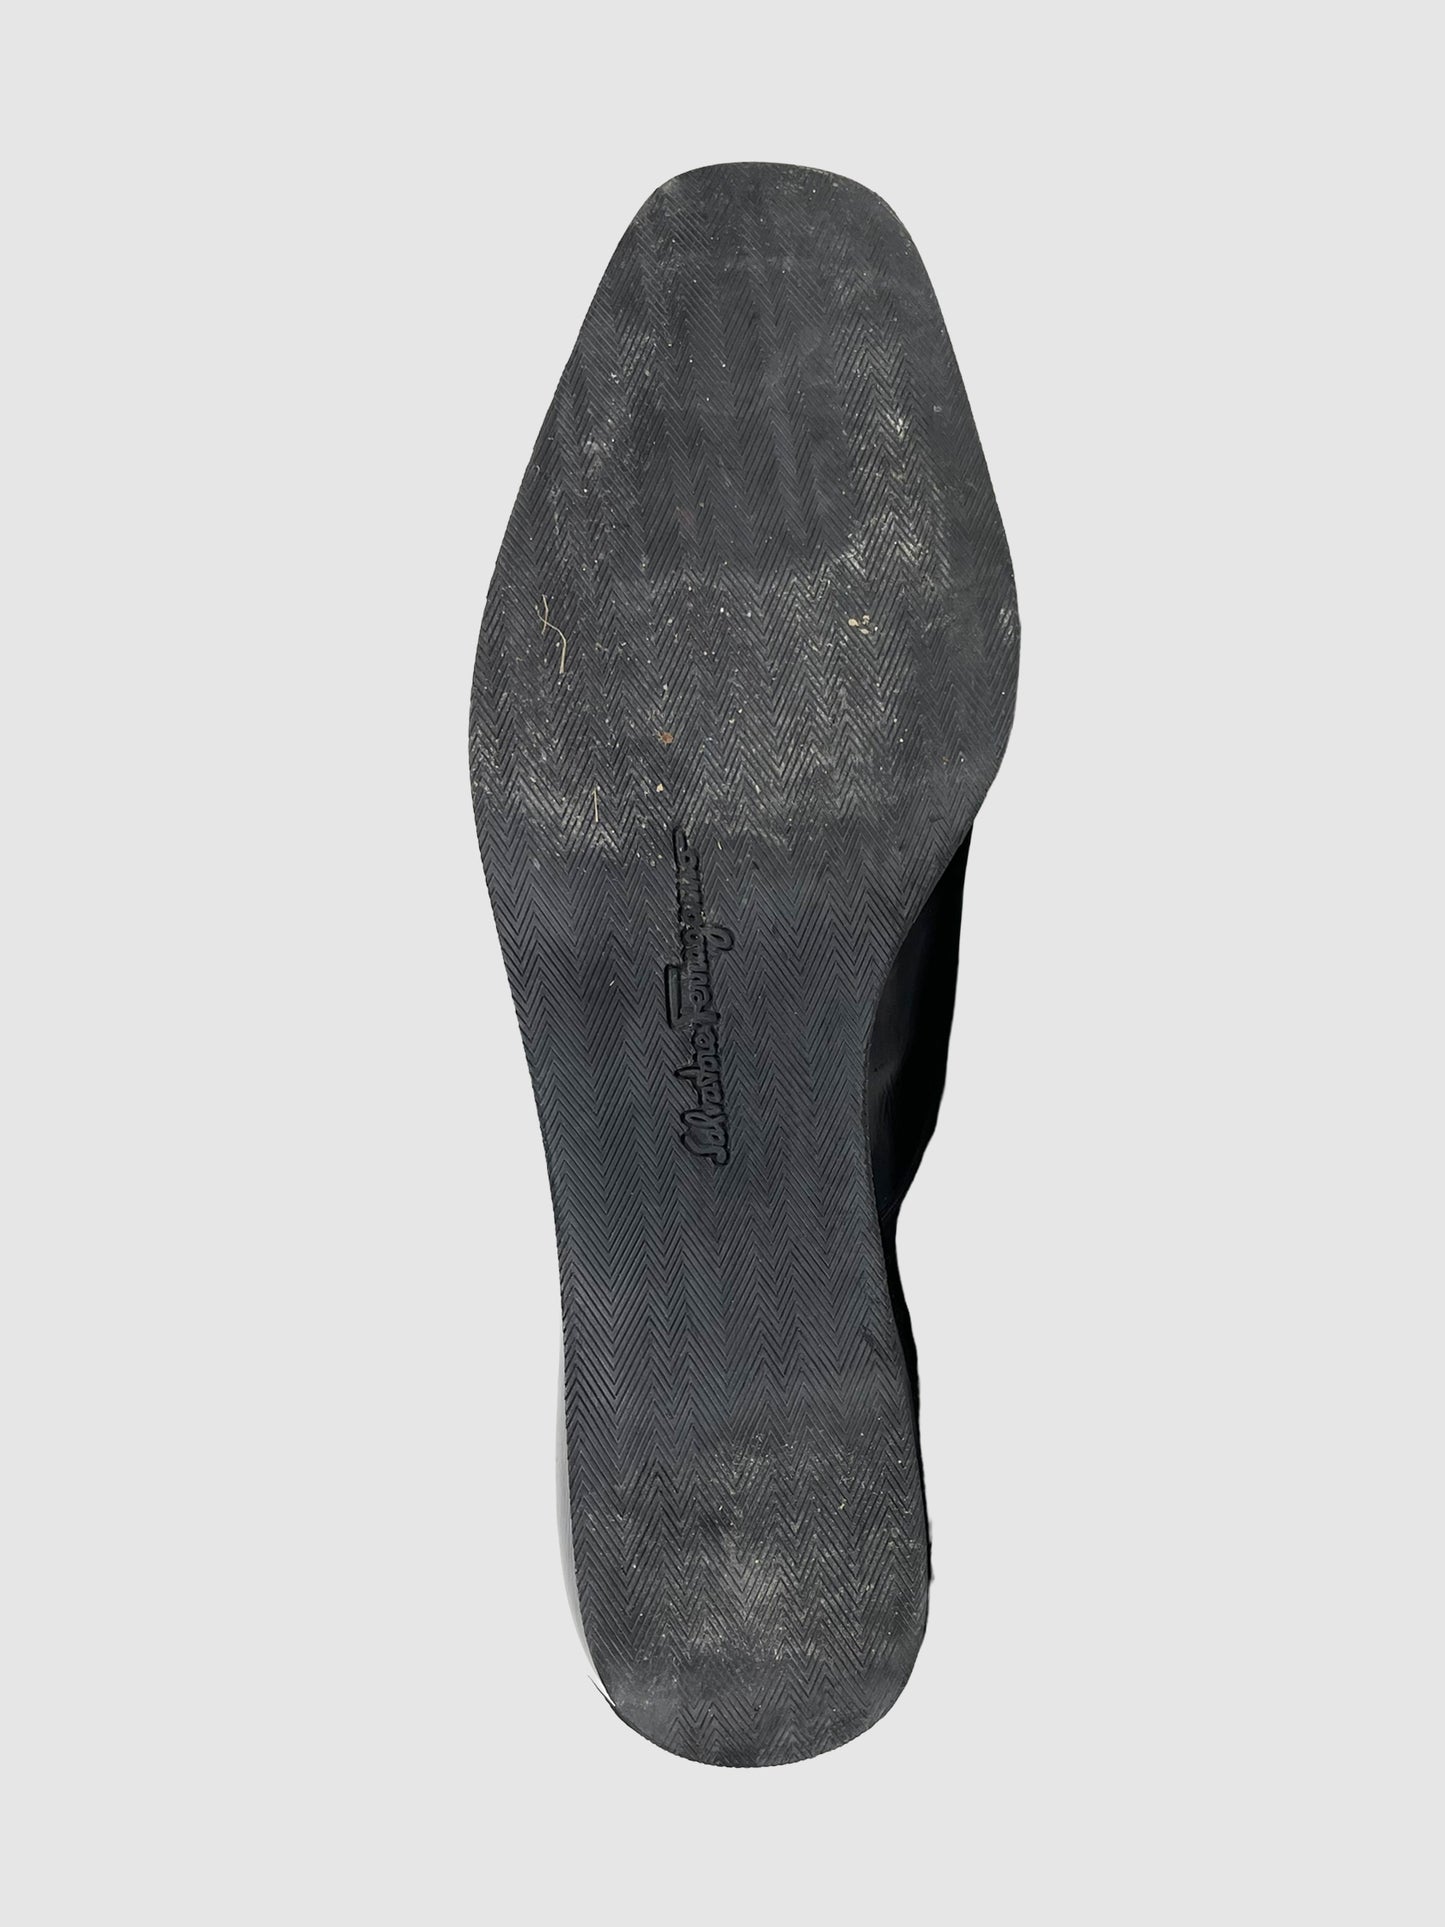 Salvatore Ferragamo Patent Lace-Up Oxford Shoes - Size 10.5